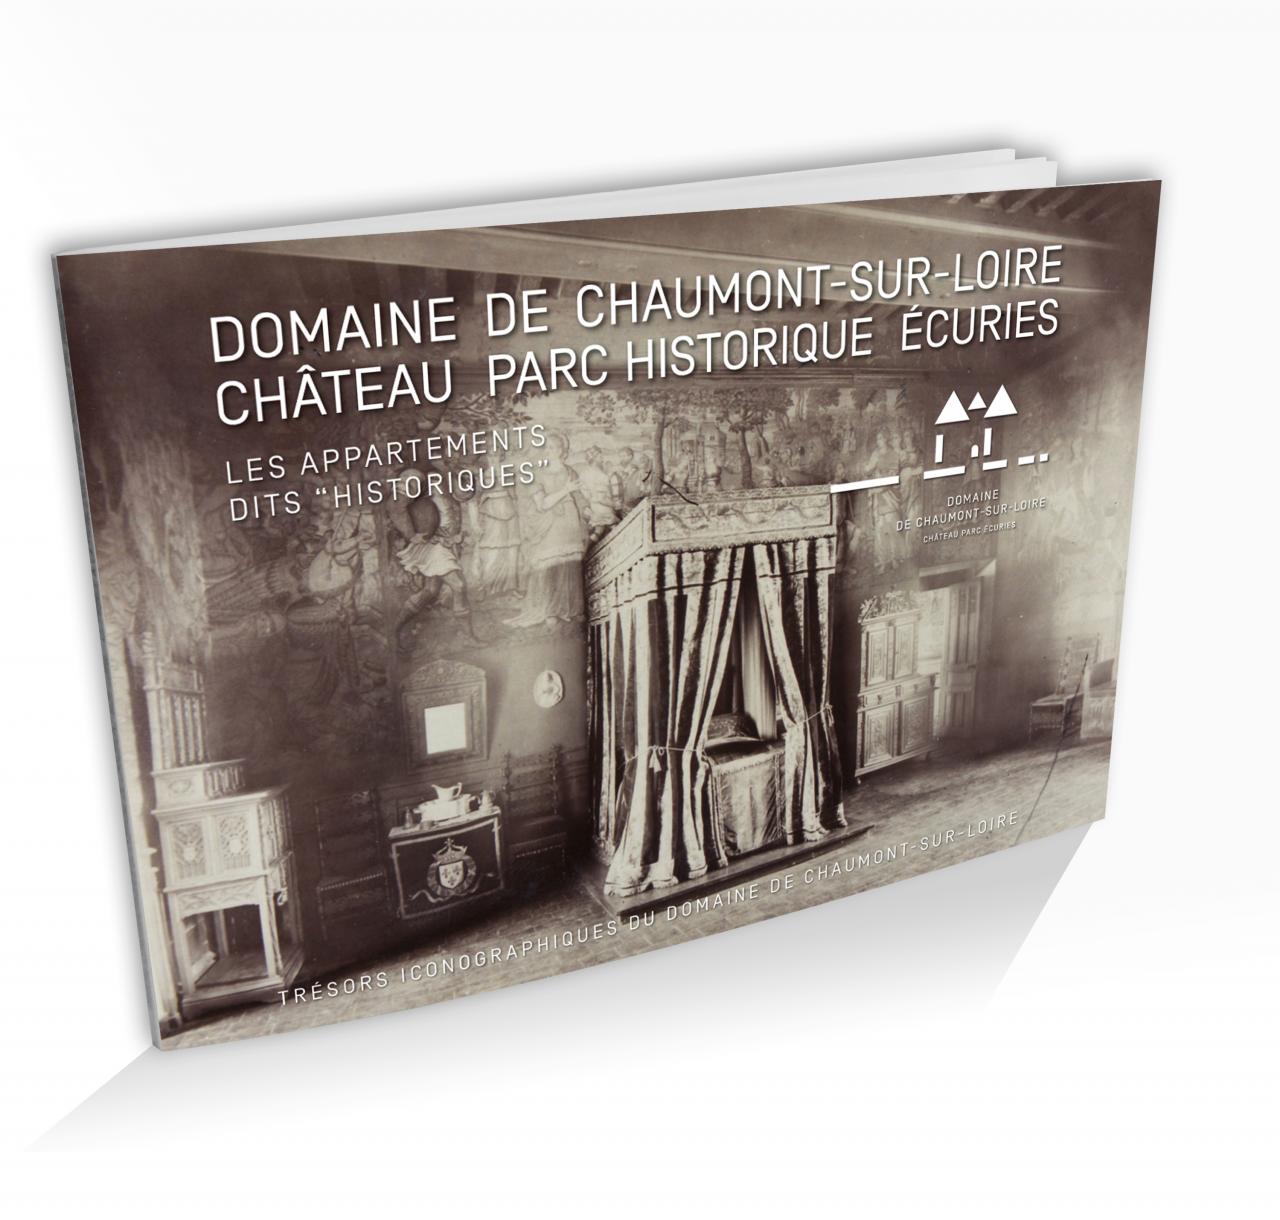 Trésors iconographiques du Domaine de Chaumont-sur-Loire LES APPARTEMENTS DITS "HISTORIQUES"